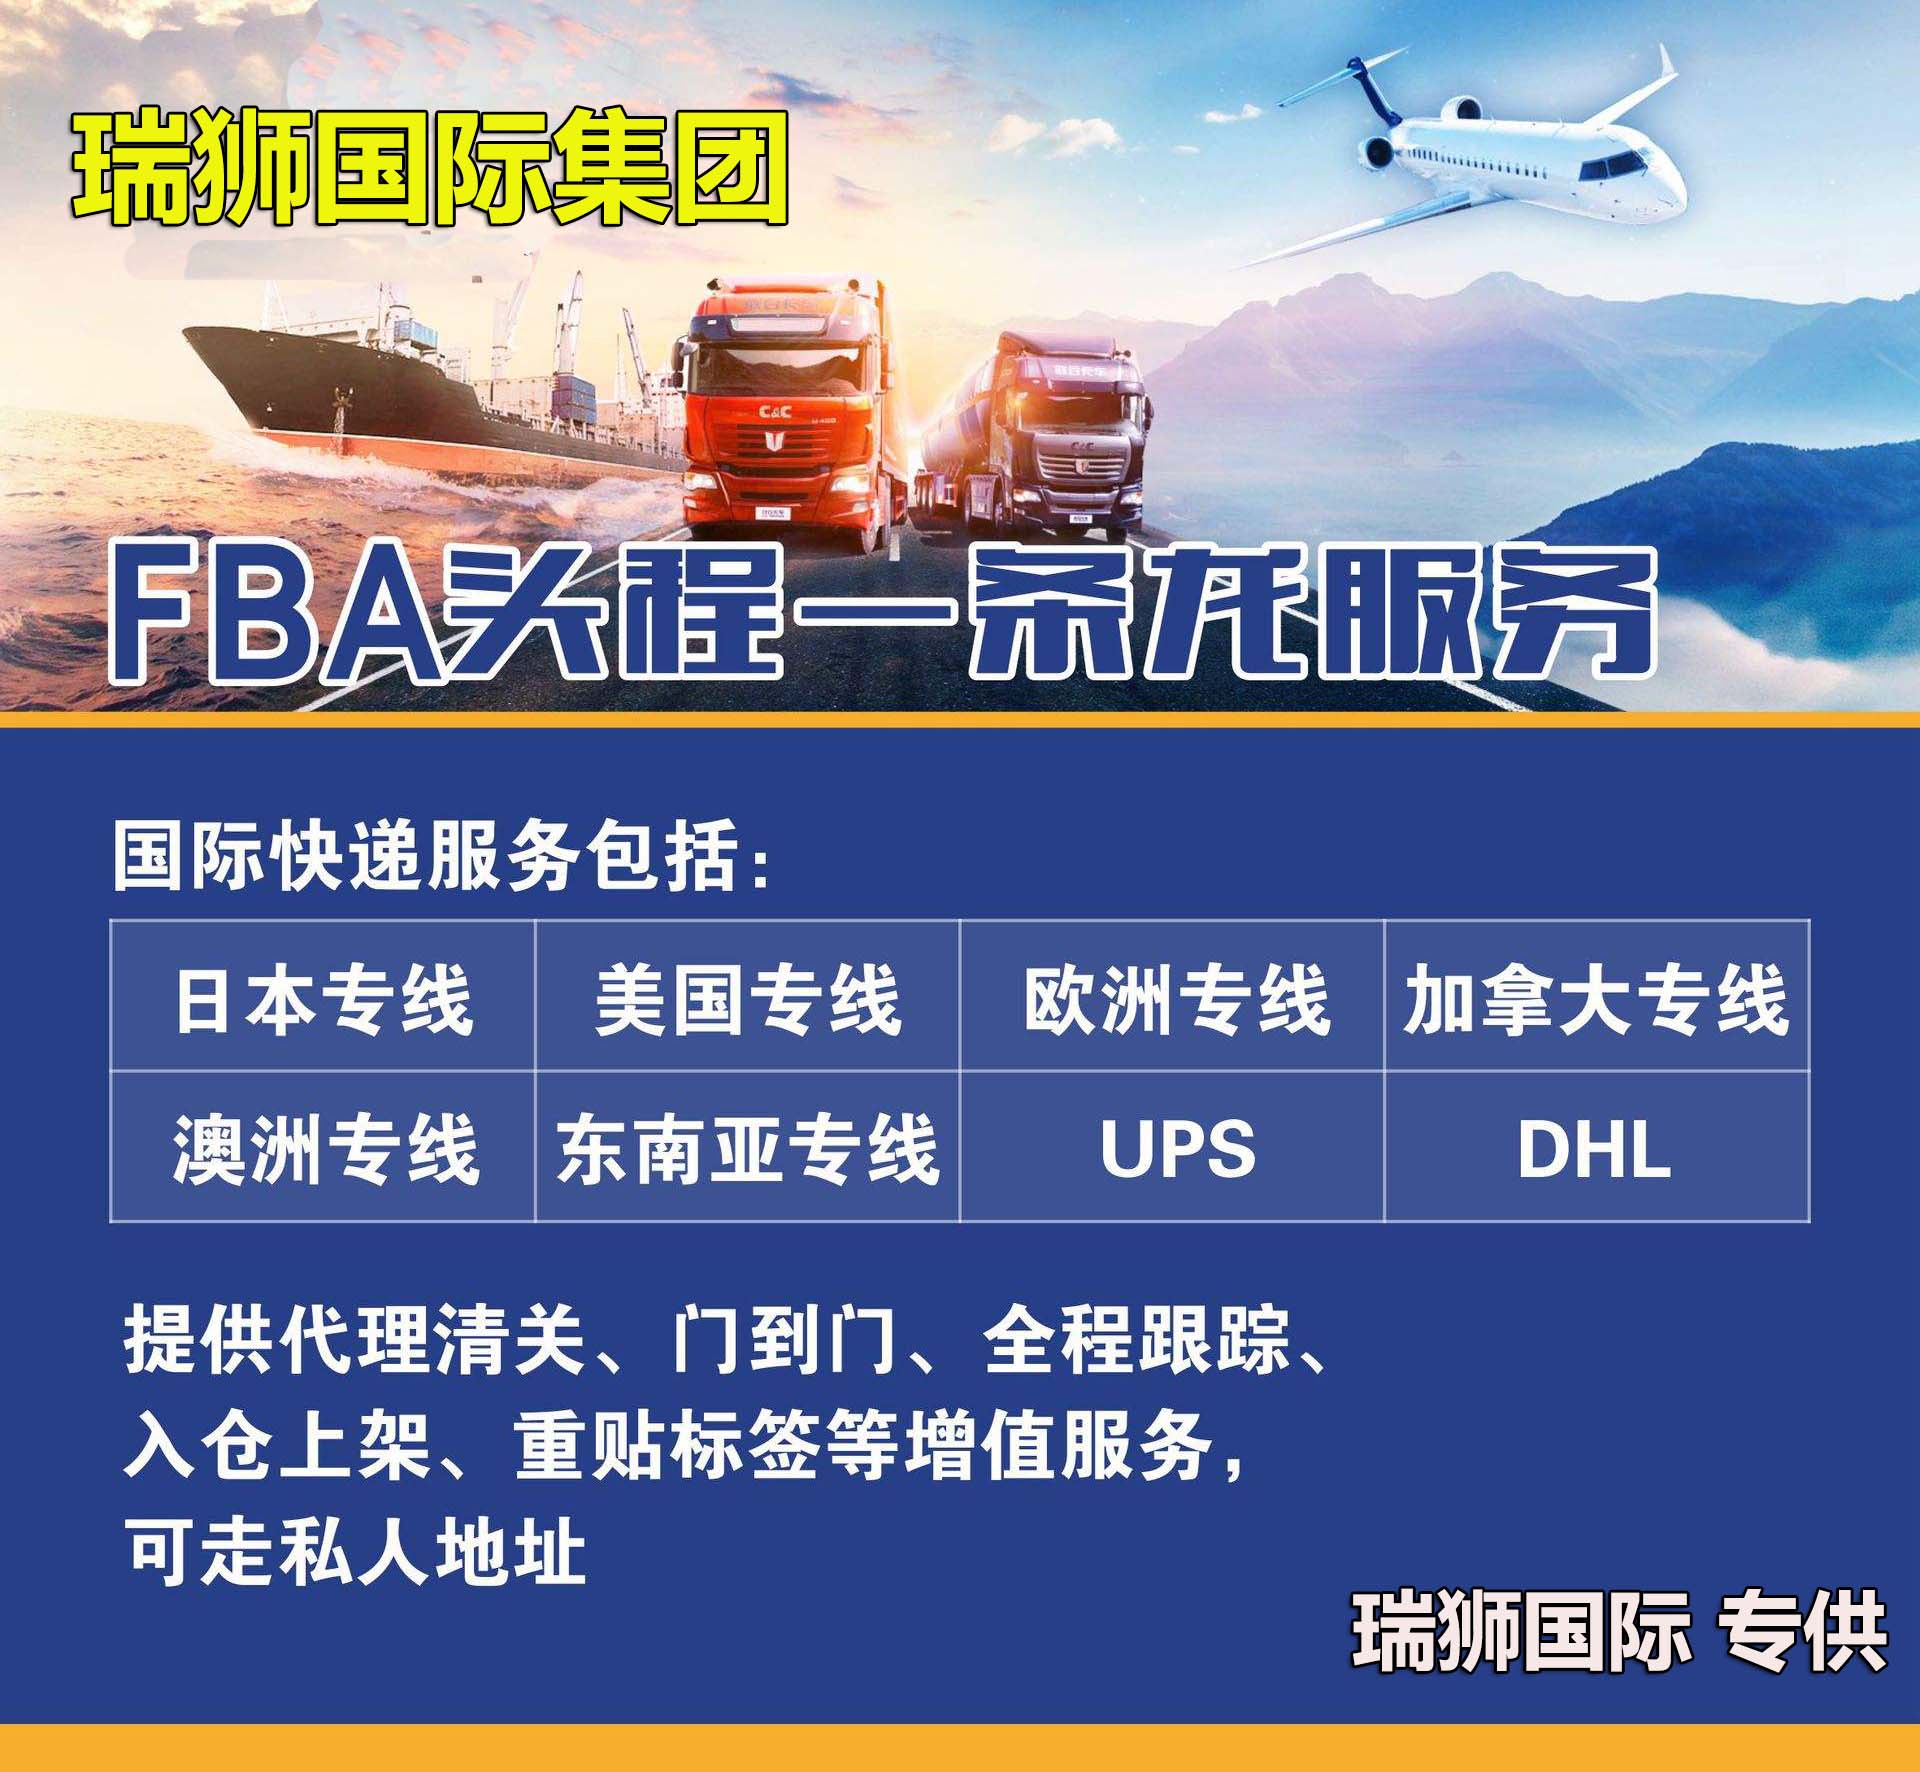 KANWAY建华海运船公司船期查询货物追踪海运价格查询